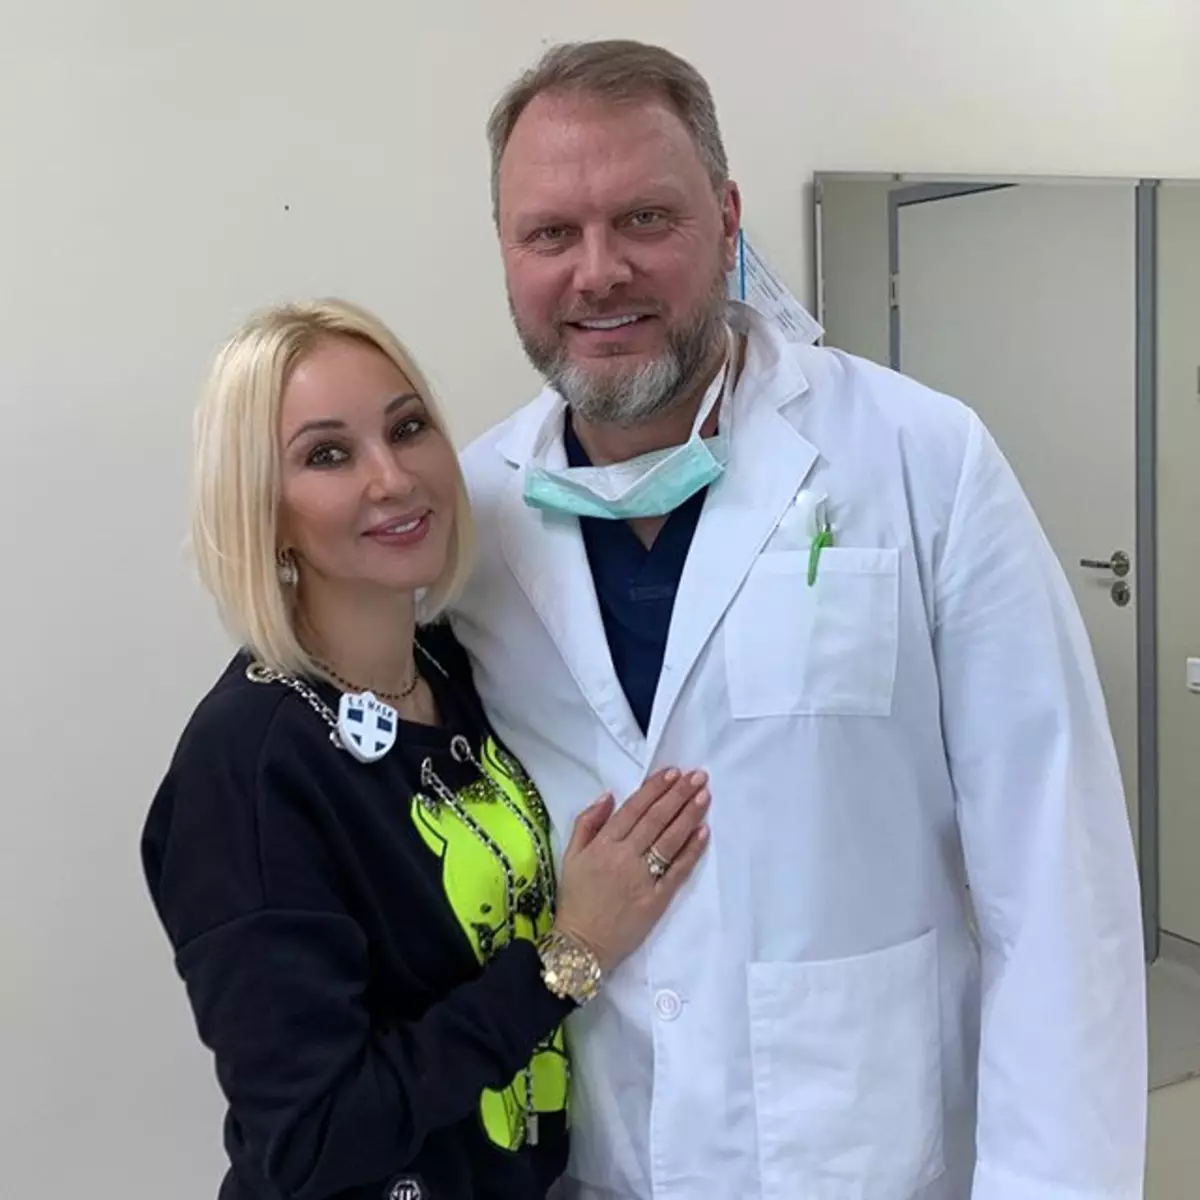 Lera Kudryavtseva, tehlikeli implantlardan kurtulduktan sonra hafifçe çekti.